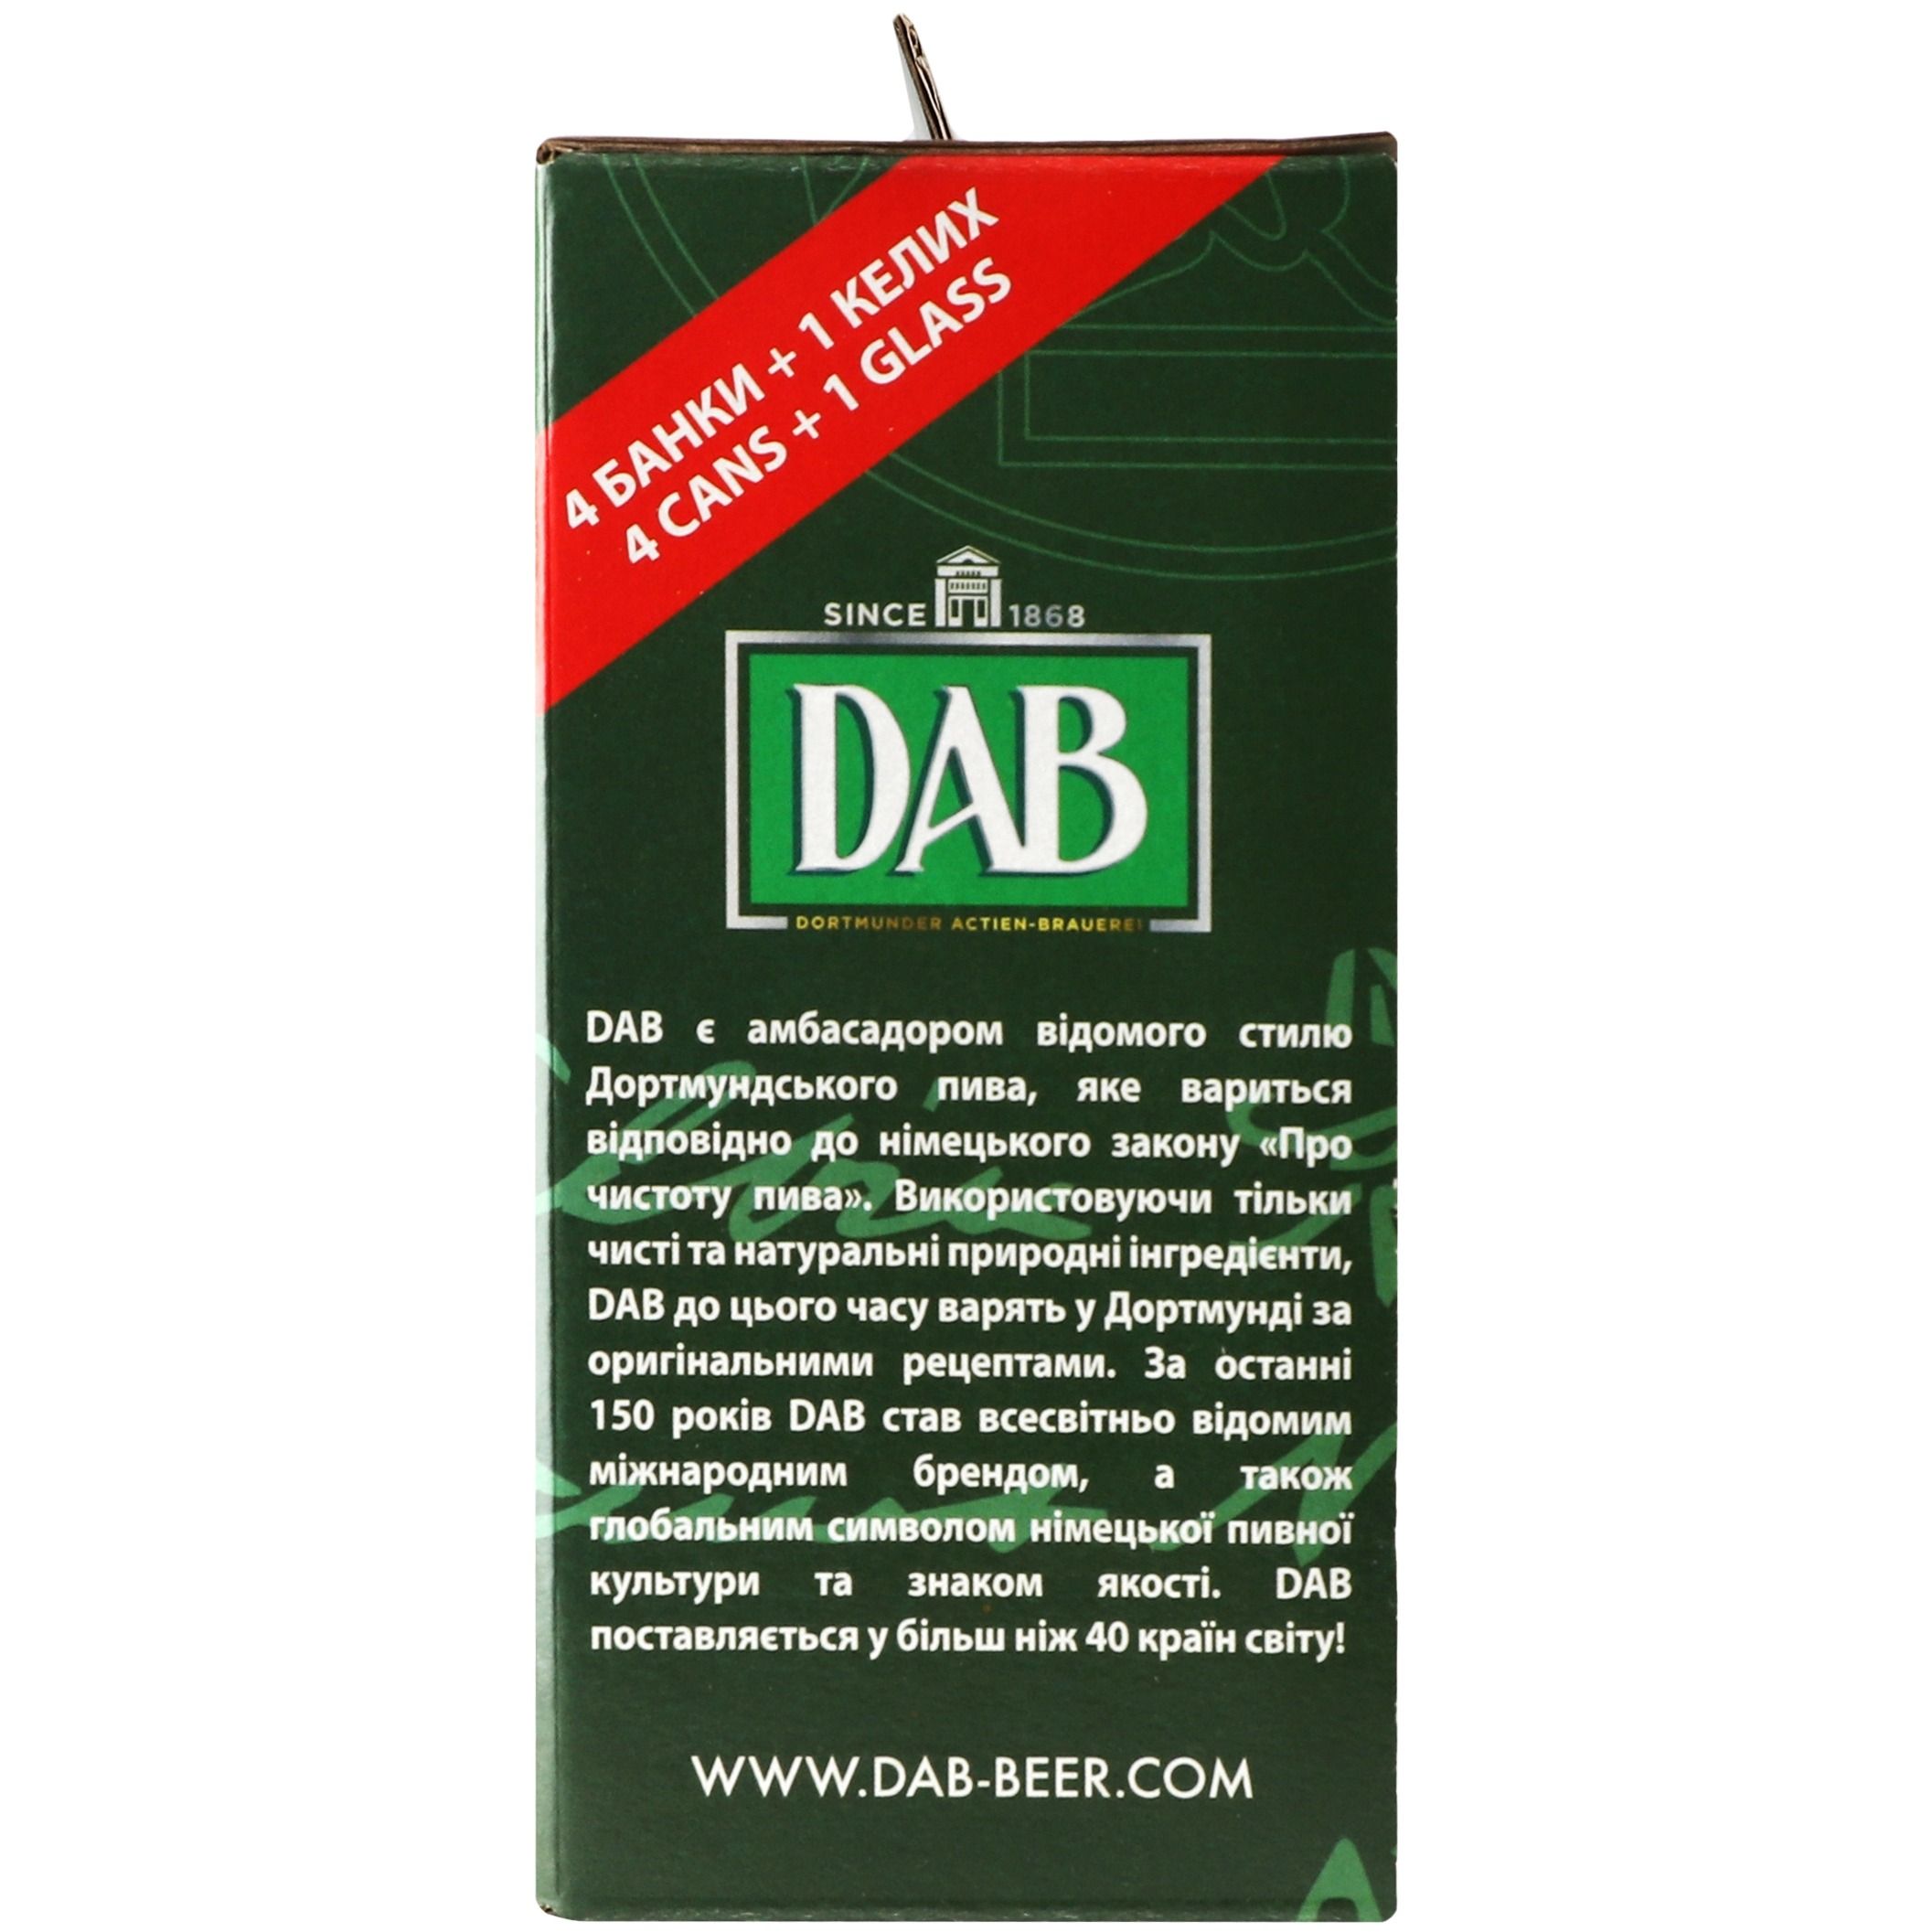 Набор: пиво DAB export 0.5л + DAB темное 0.5л + DAB kellerbier 0.5л + DAB Hoppy Lager 0.5л + бокал - фото 5